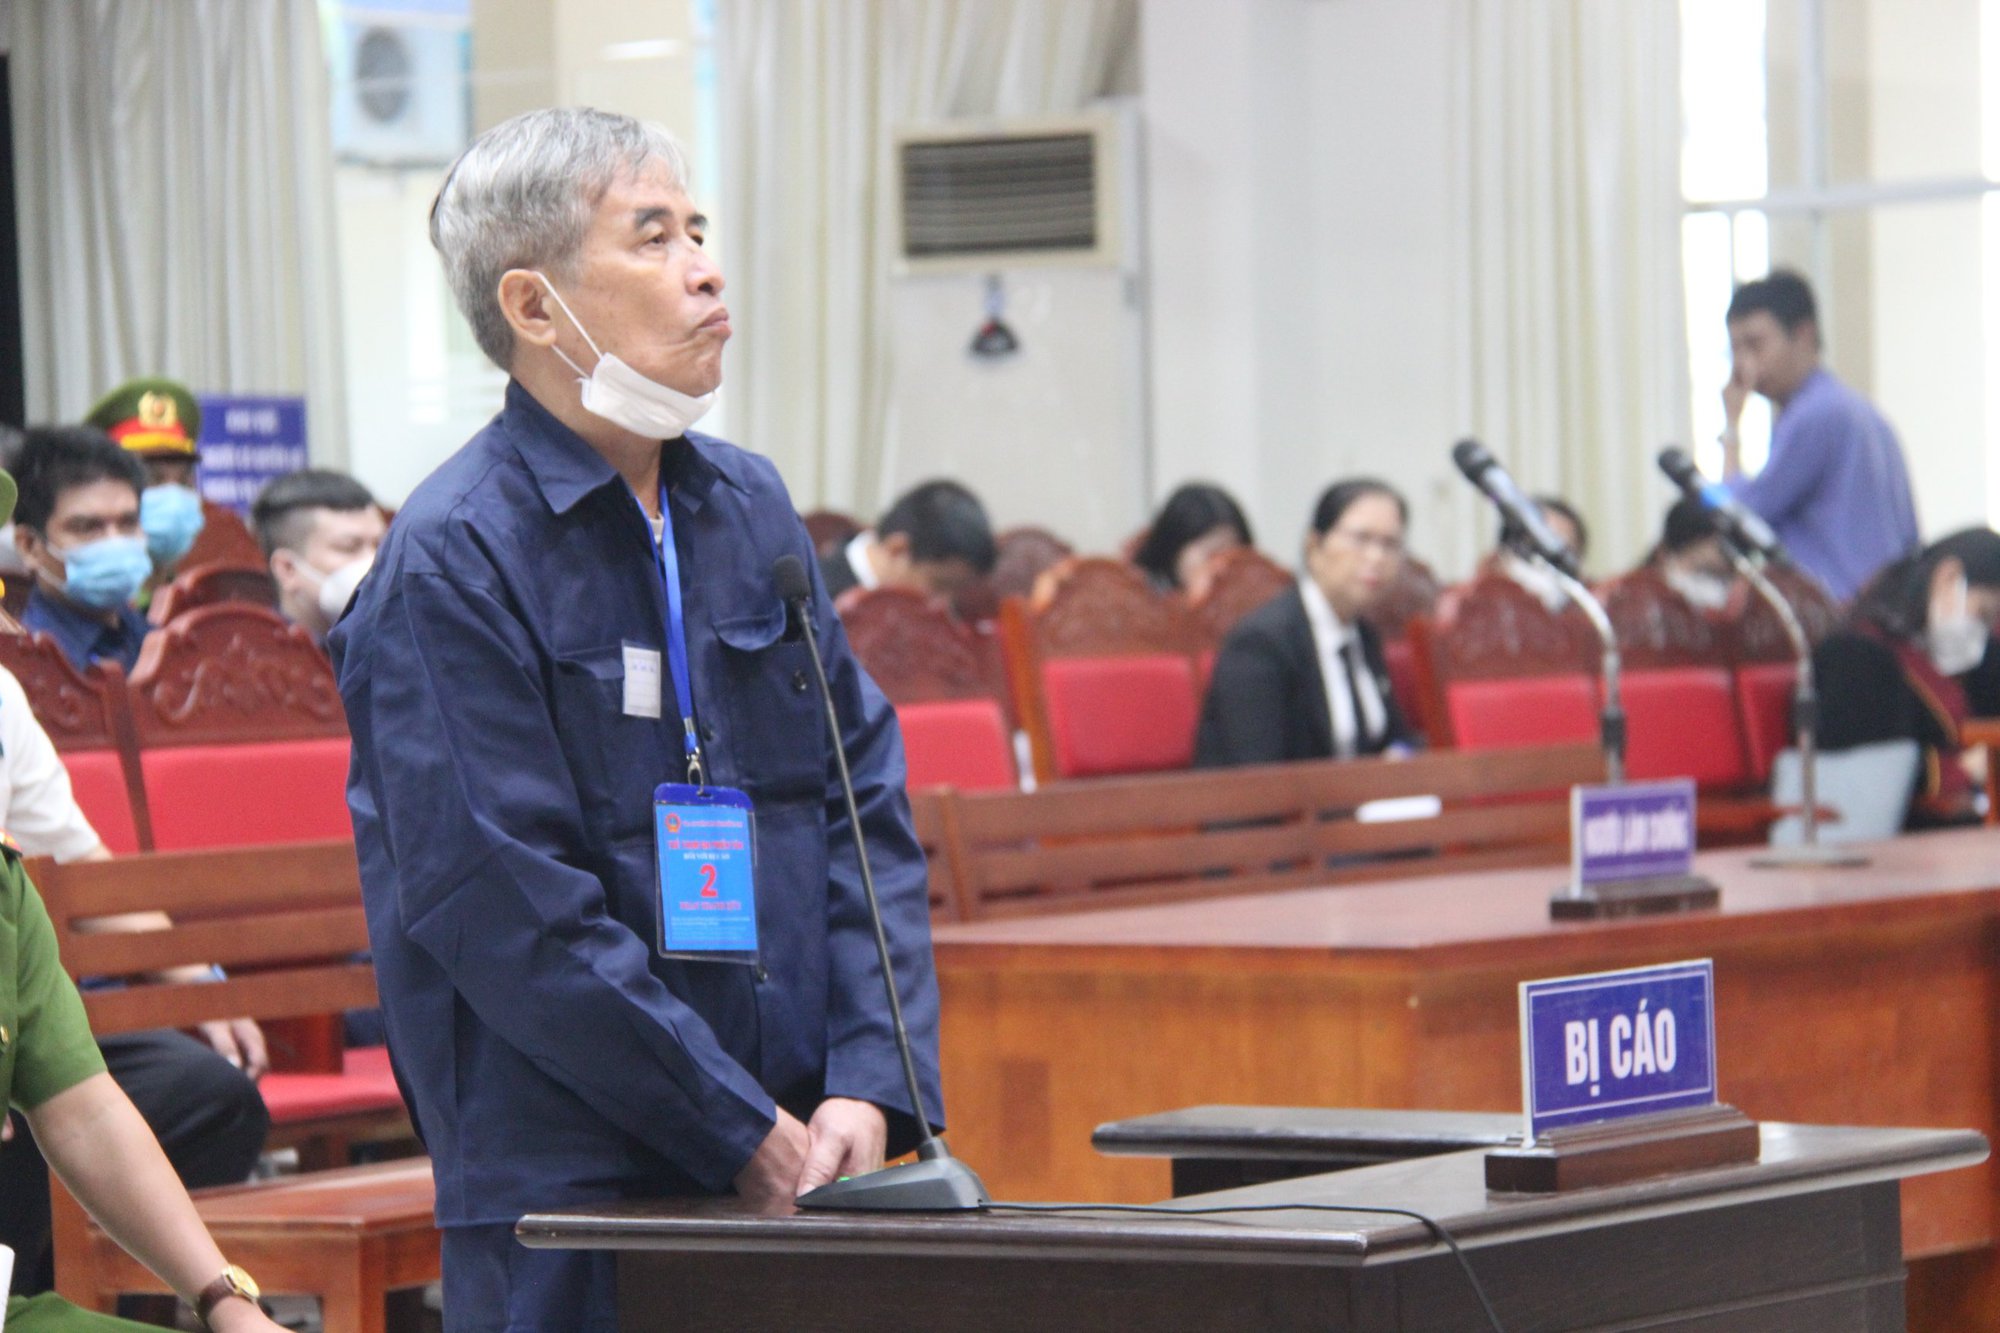 Đại án xăng giả, xăng lậu: Ngô Văn Thụy, &quot;sếp&quot; chống buôn lậu bị cáo buộc nhận hối lộ 830 triệu đồng - Ảnh 3.